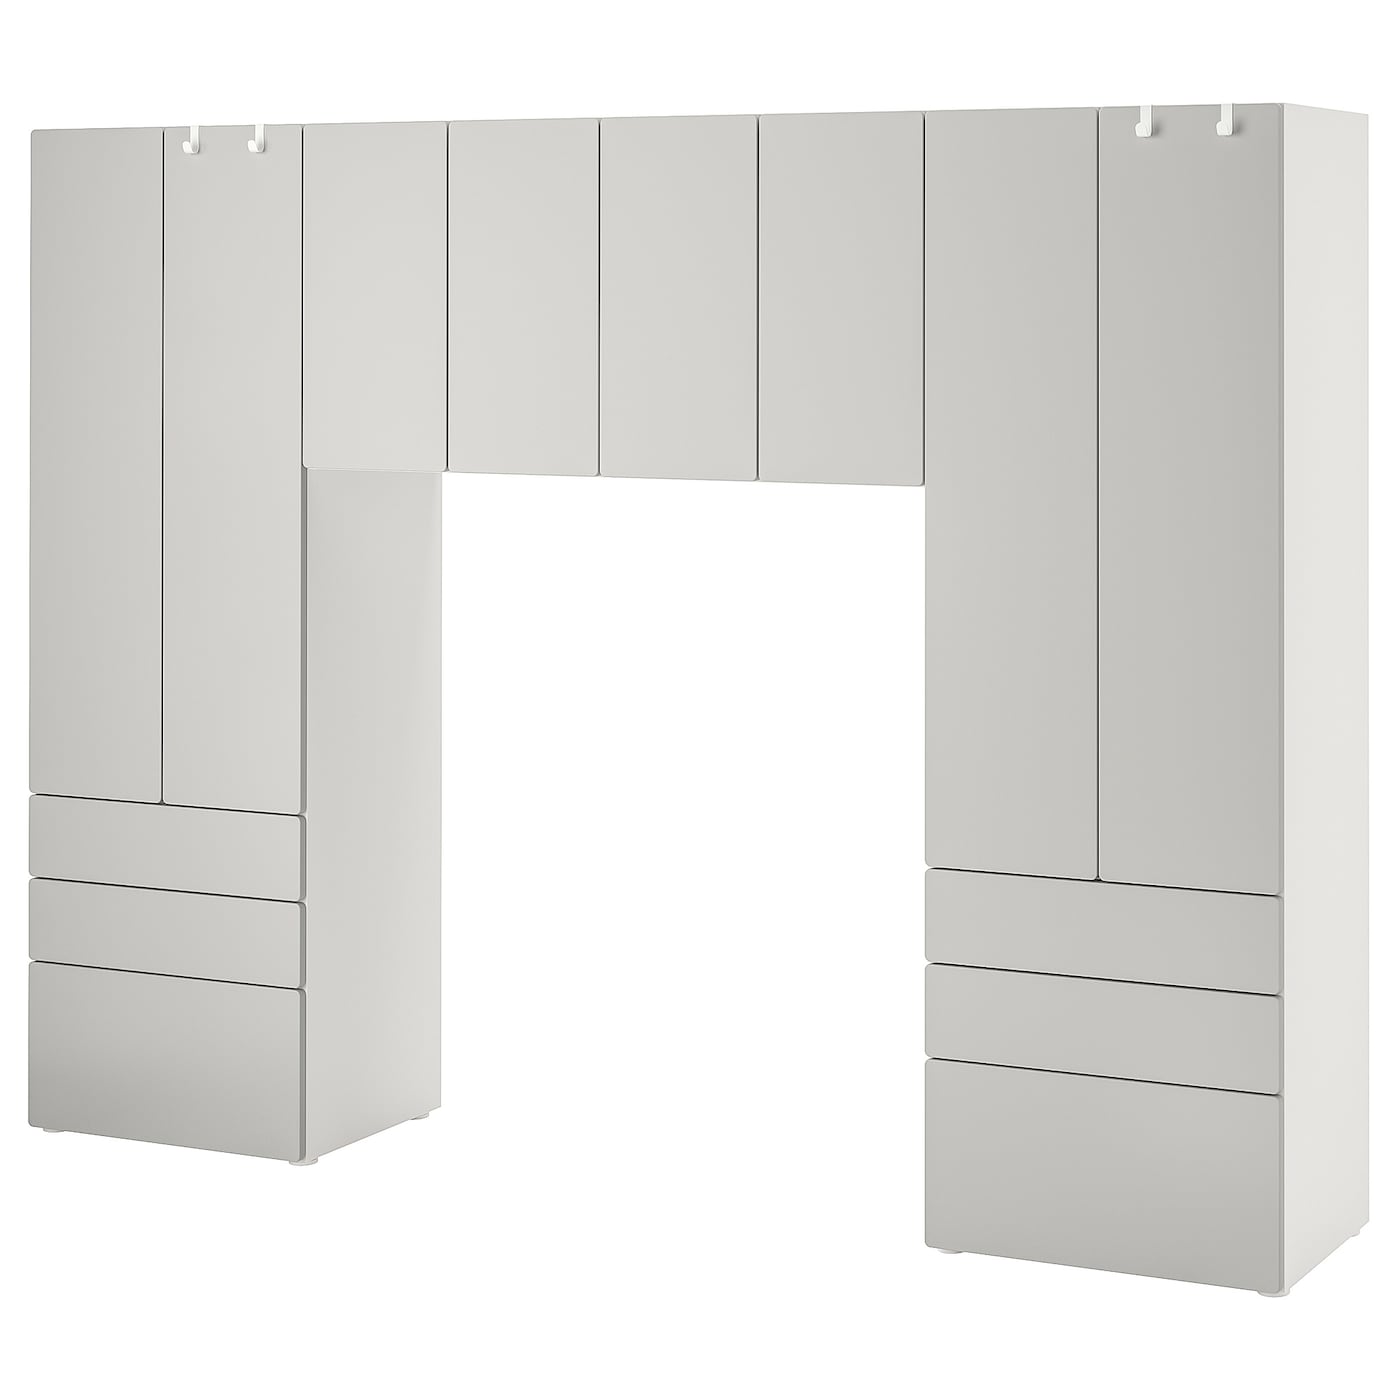 Шкаф - PLATSA/ SMÅSTAD / SMАSTAD  IKEA/ ПЛАТСА/СМОСТАД  ИКЕА, 240x42x181 см, белый/серый